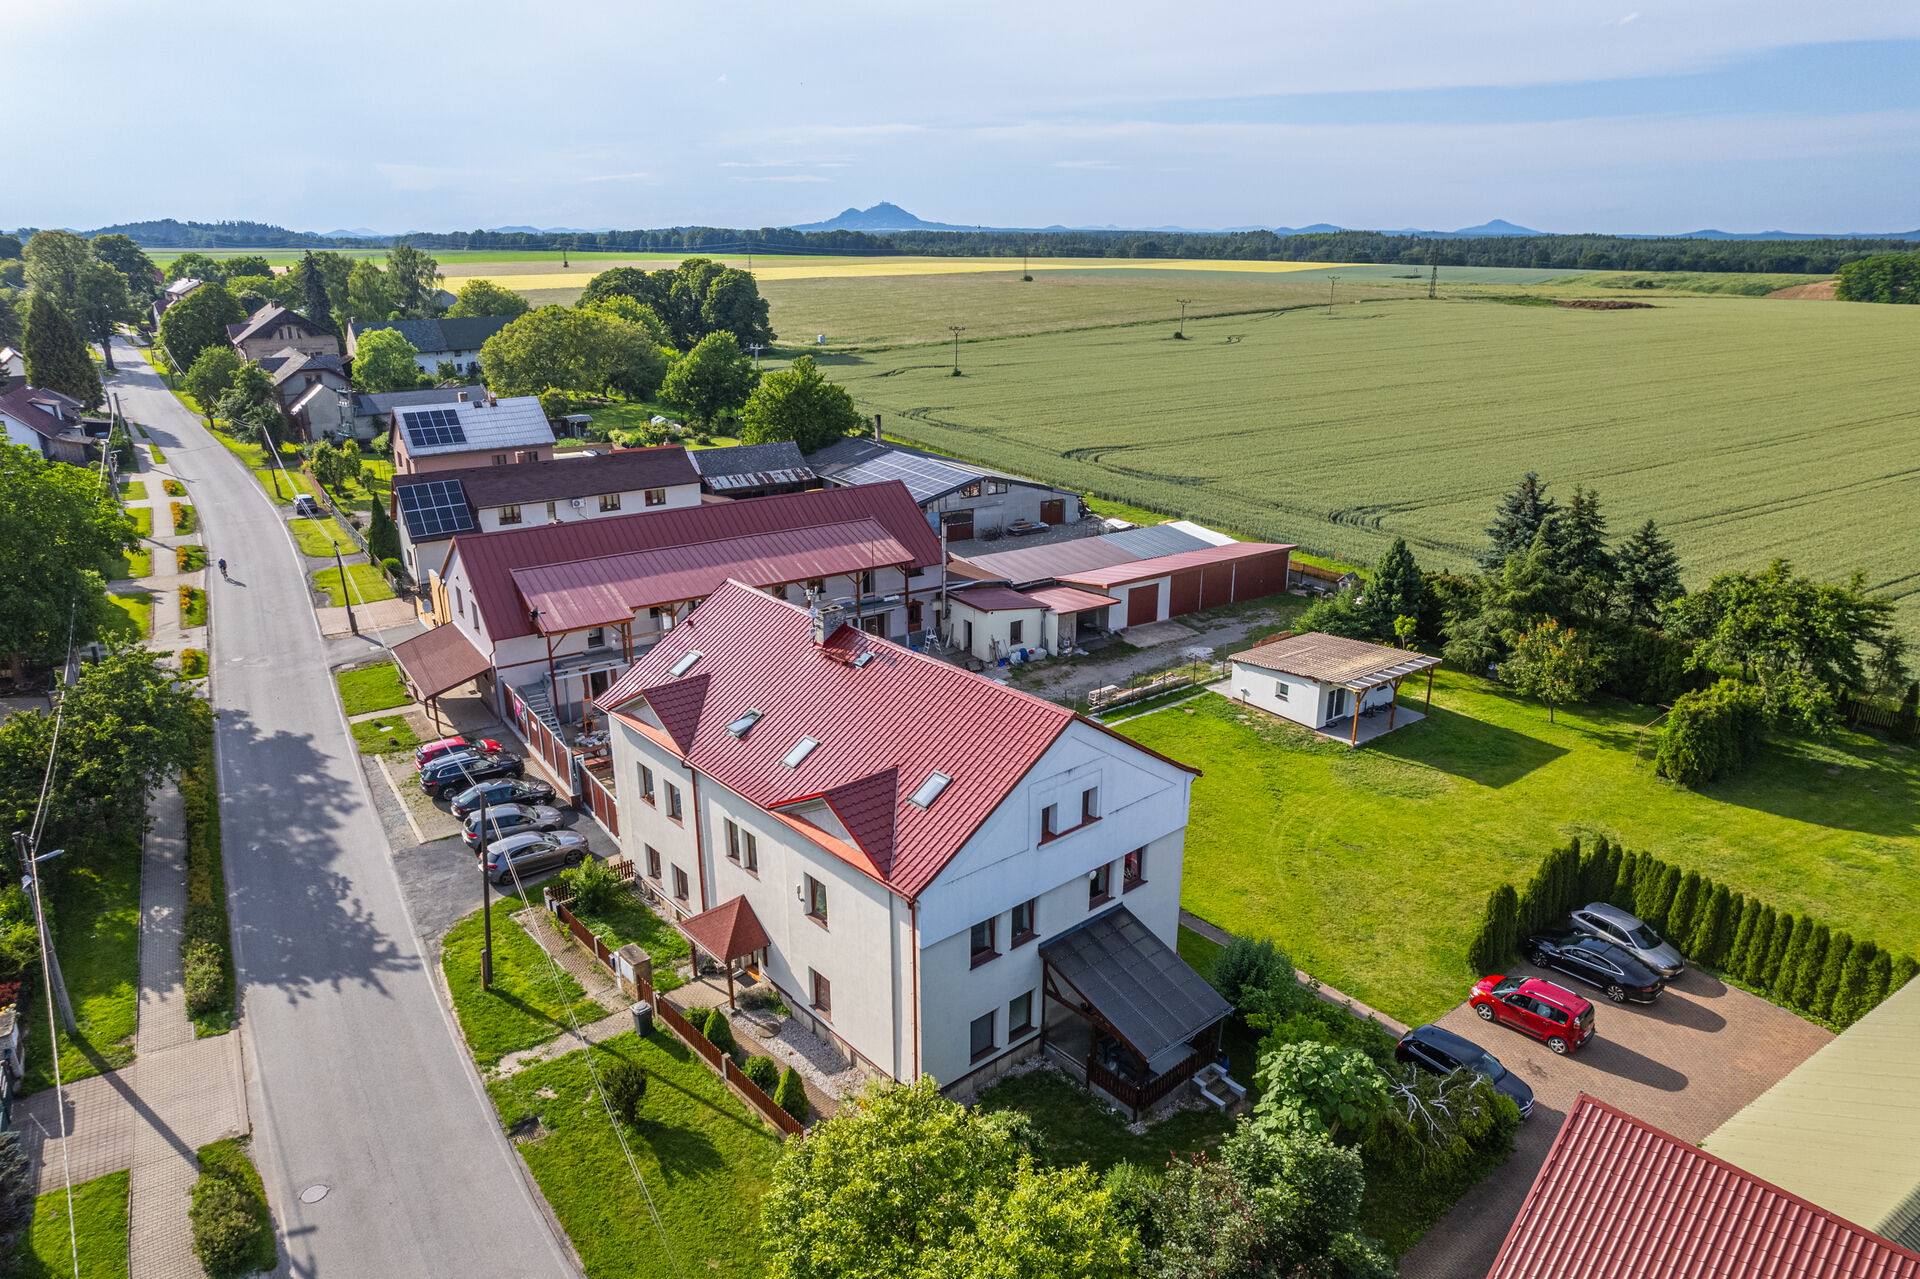 Prodej bytového domu, 6 bytových jednotek, obec Bukovno - Líny, 660m² obytné plochy, 2234m² pozemek